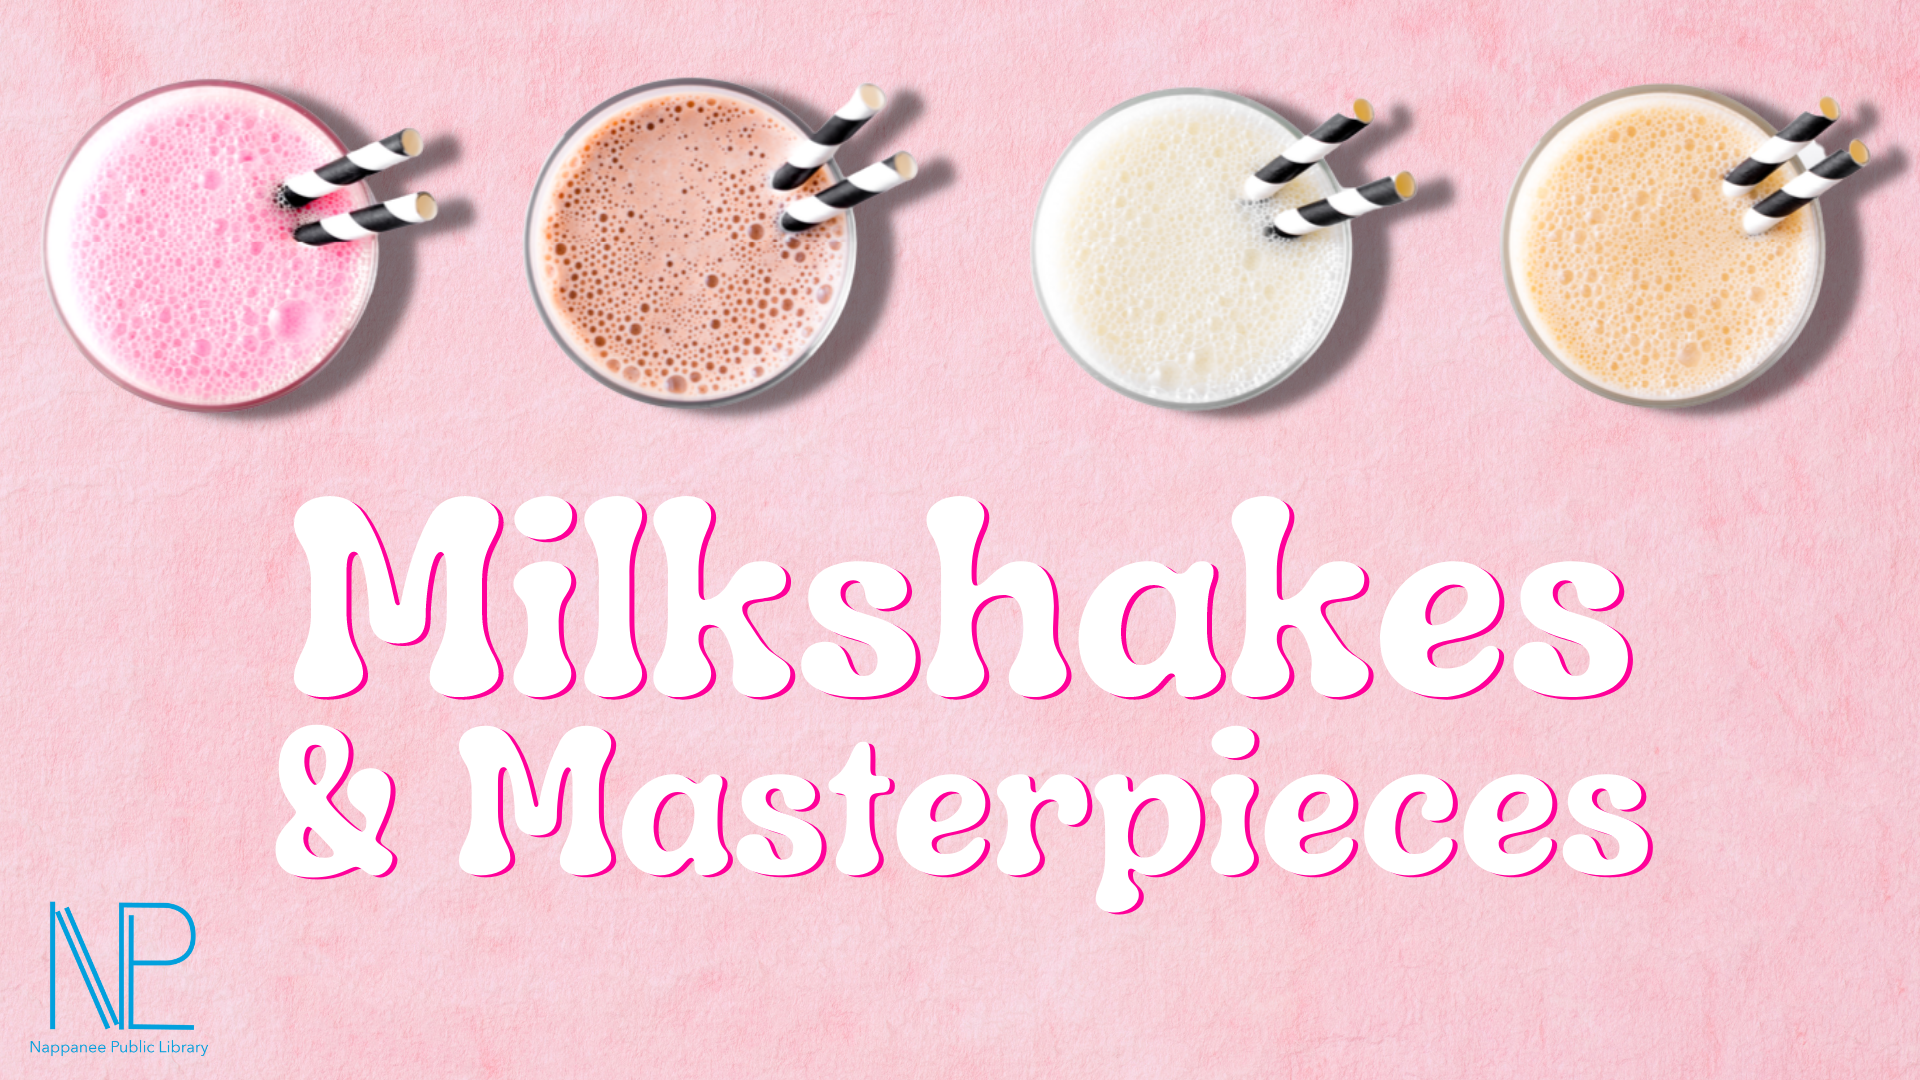 Milkshakes